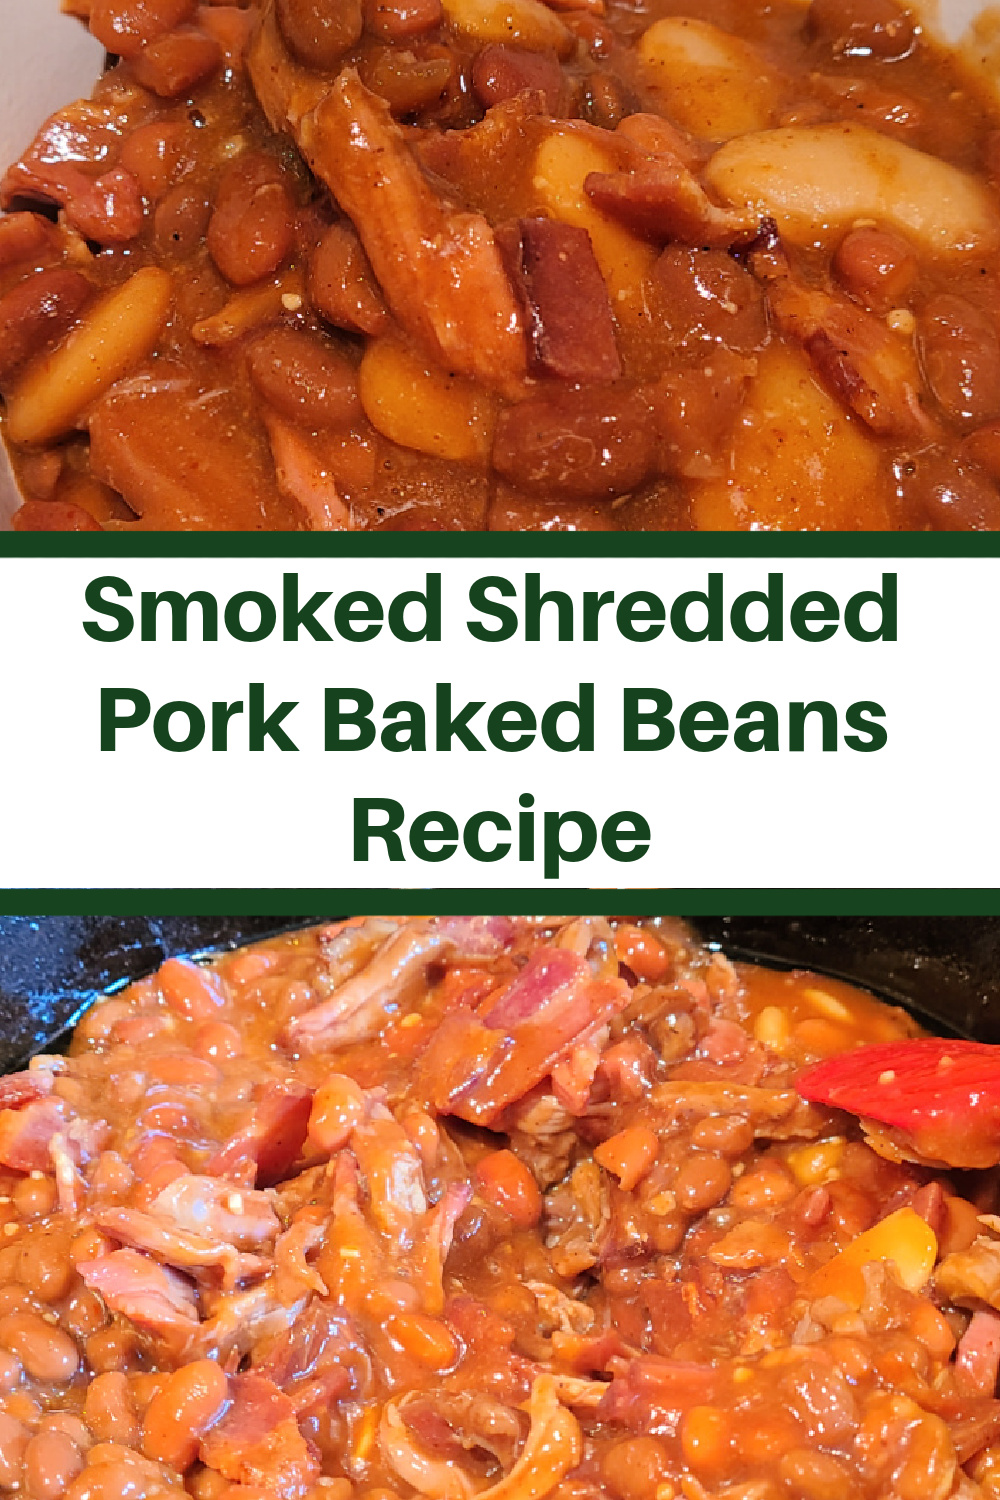 Smoked Shredded Pork Baked Beans Recipe